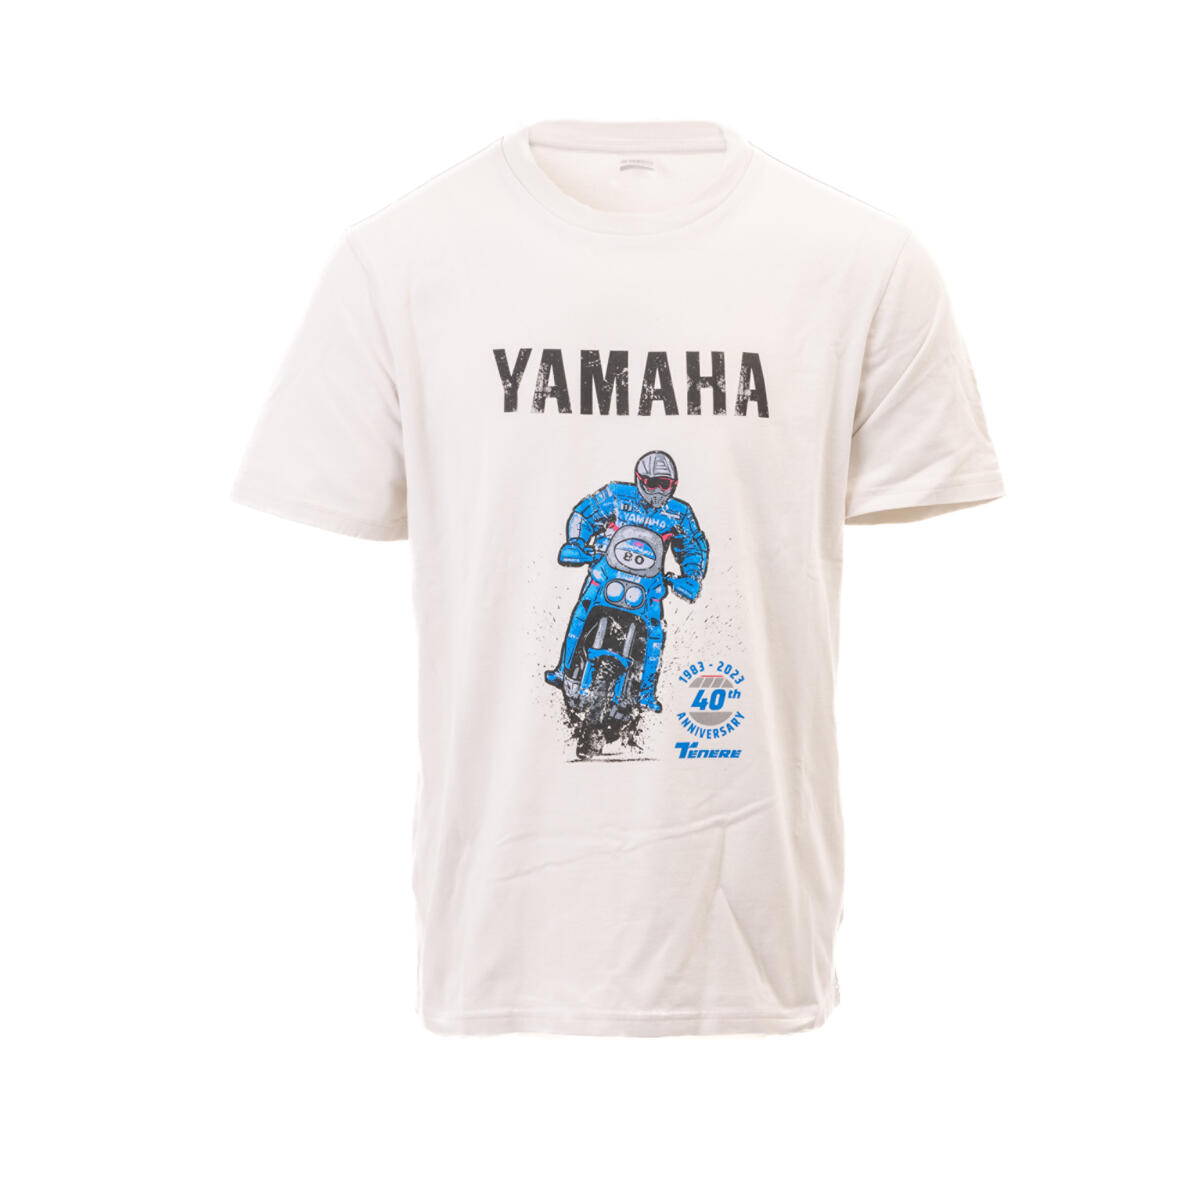 T-shirt YAMAHA Ténéré700 22 Tais blanc Limited Edition Homme - Vêtements -   - Pièces et accessoires tous scooters et cyclomoteurs